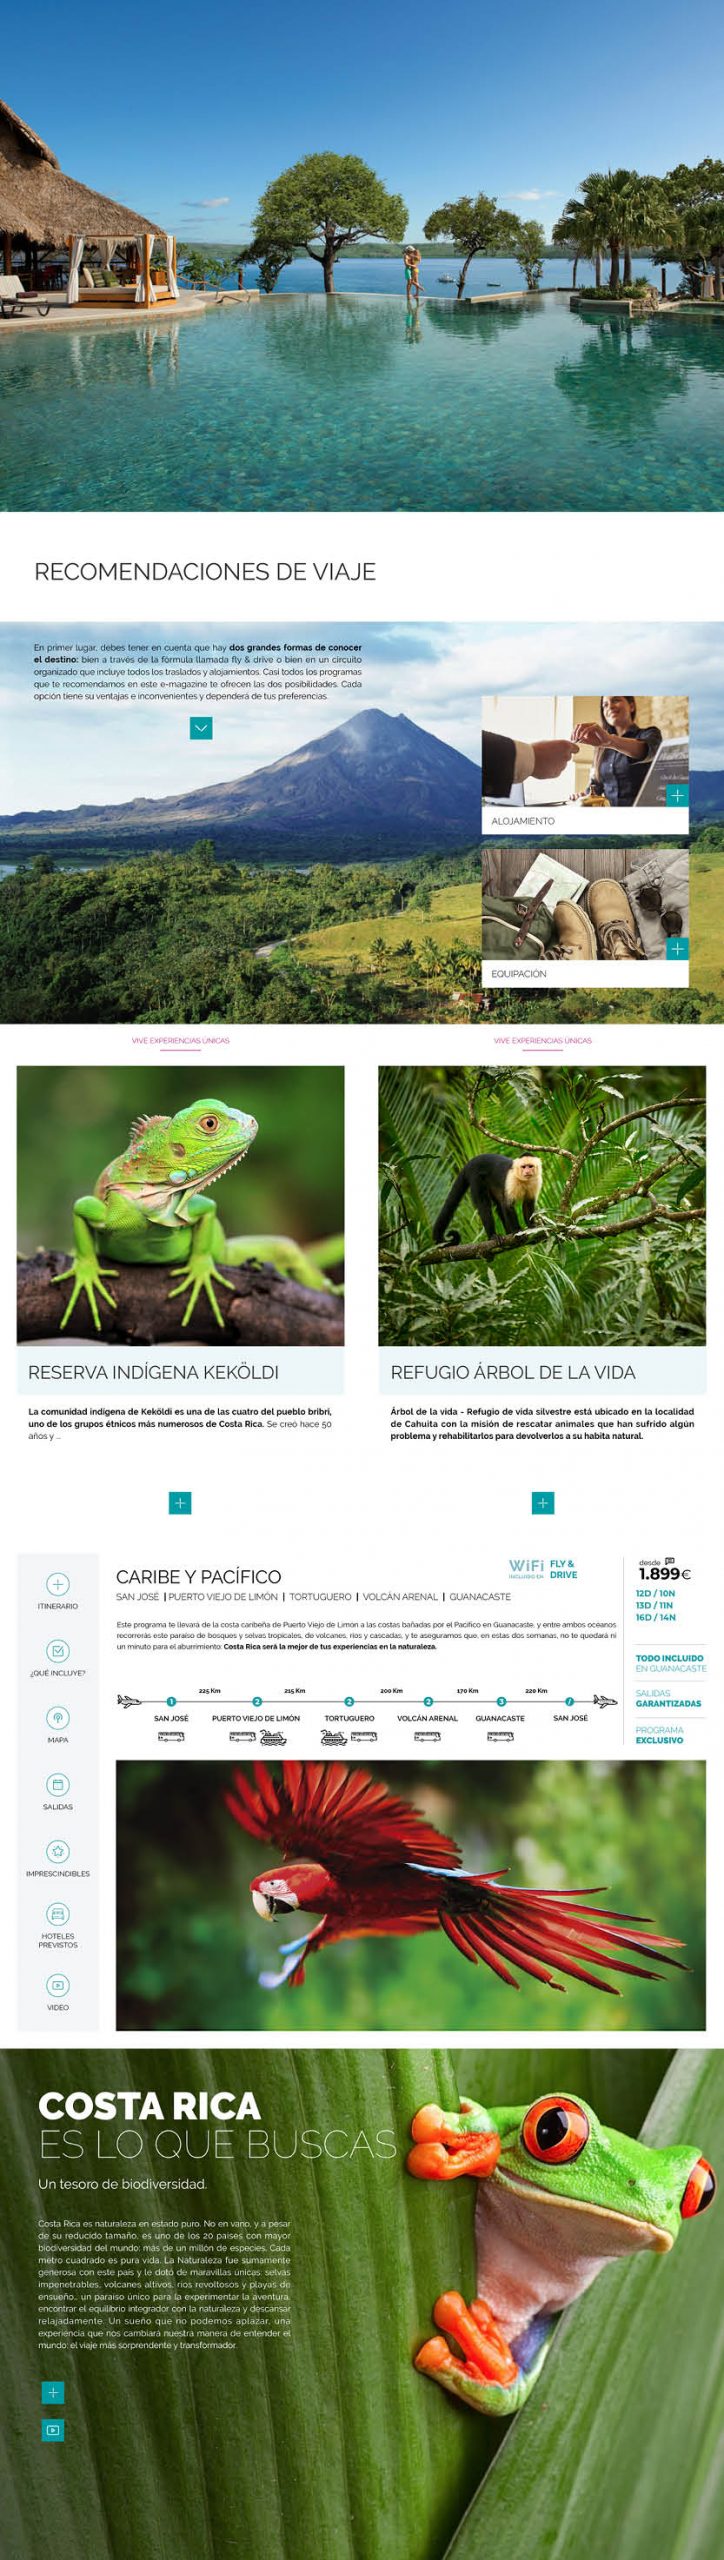 Publicaciones Interactivas. Travelplan Costa Rica